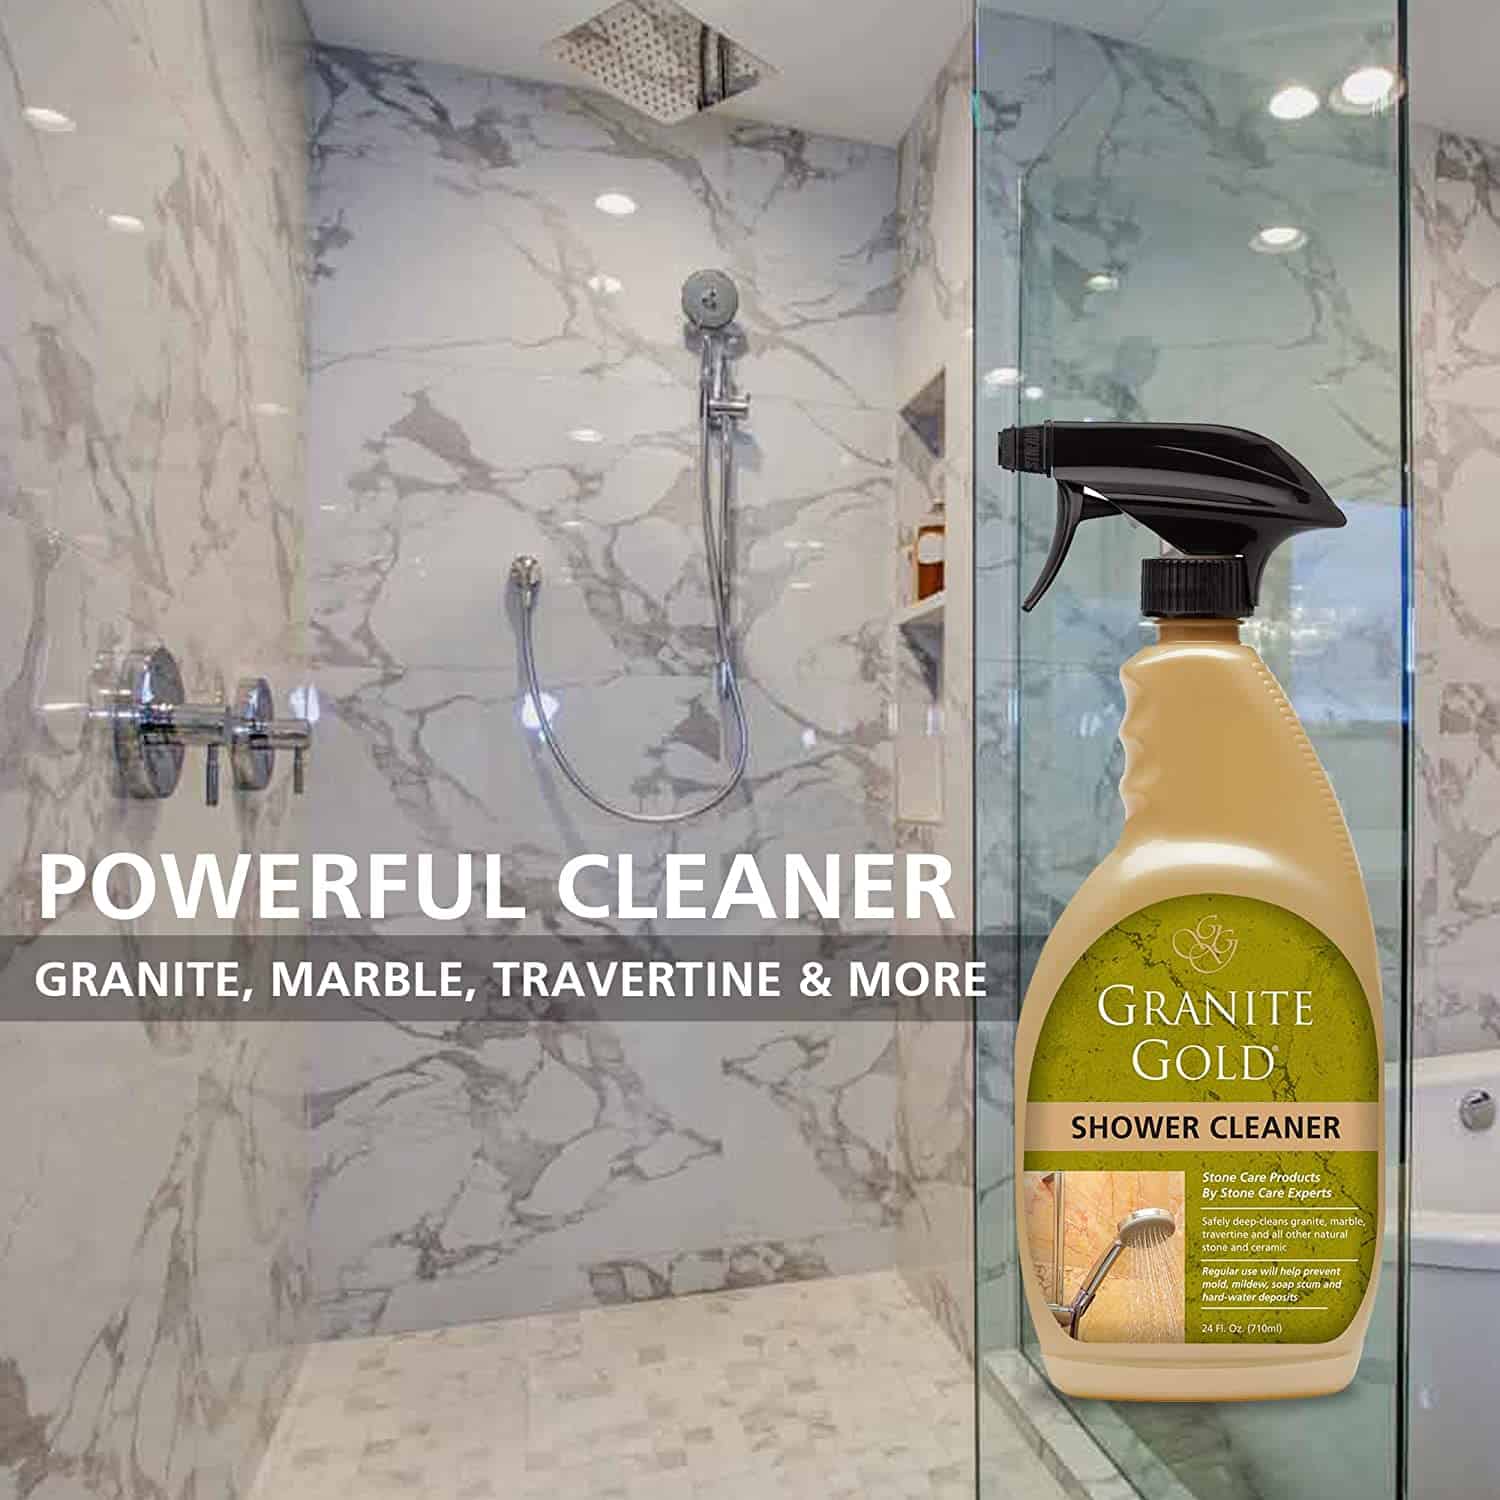 Granite Gold Shower cleaner spray